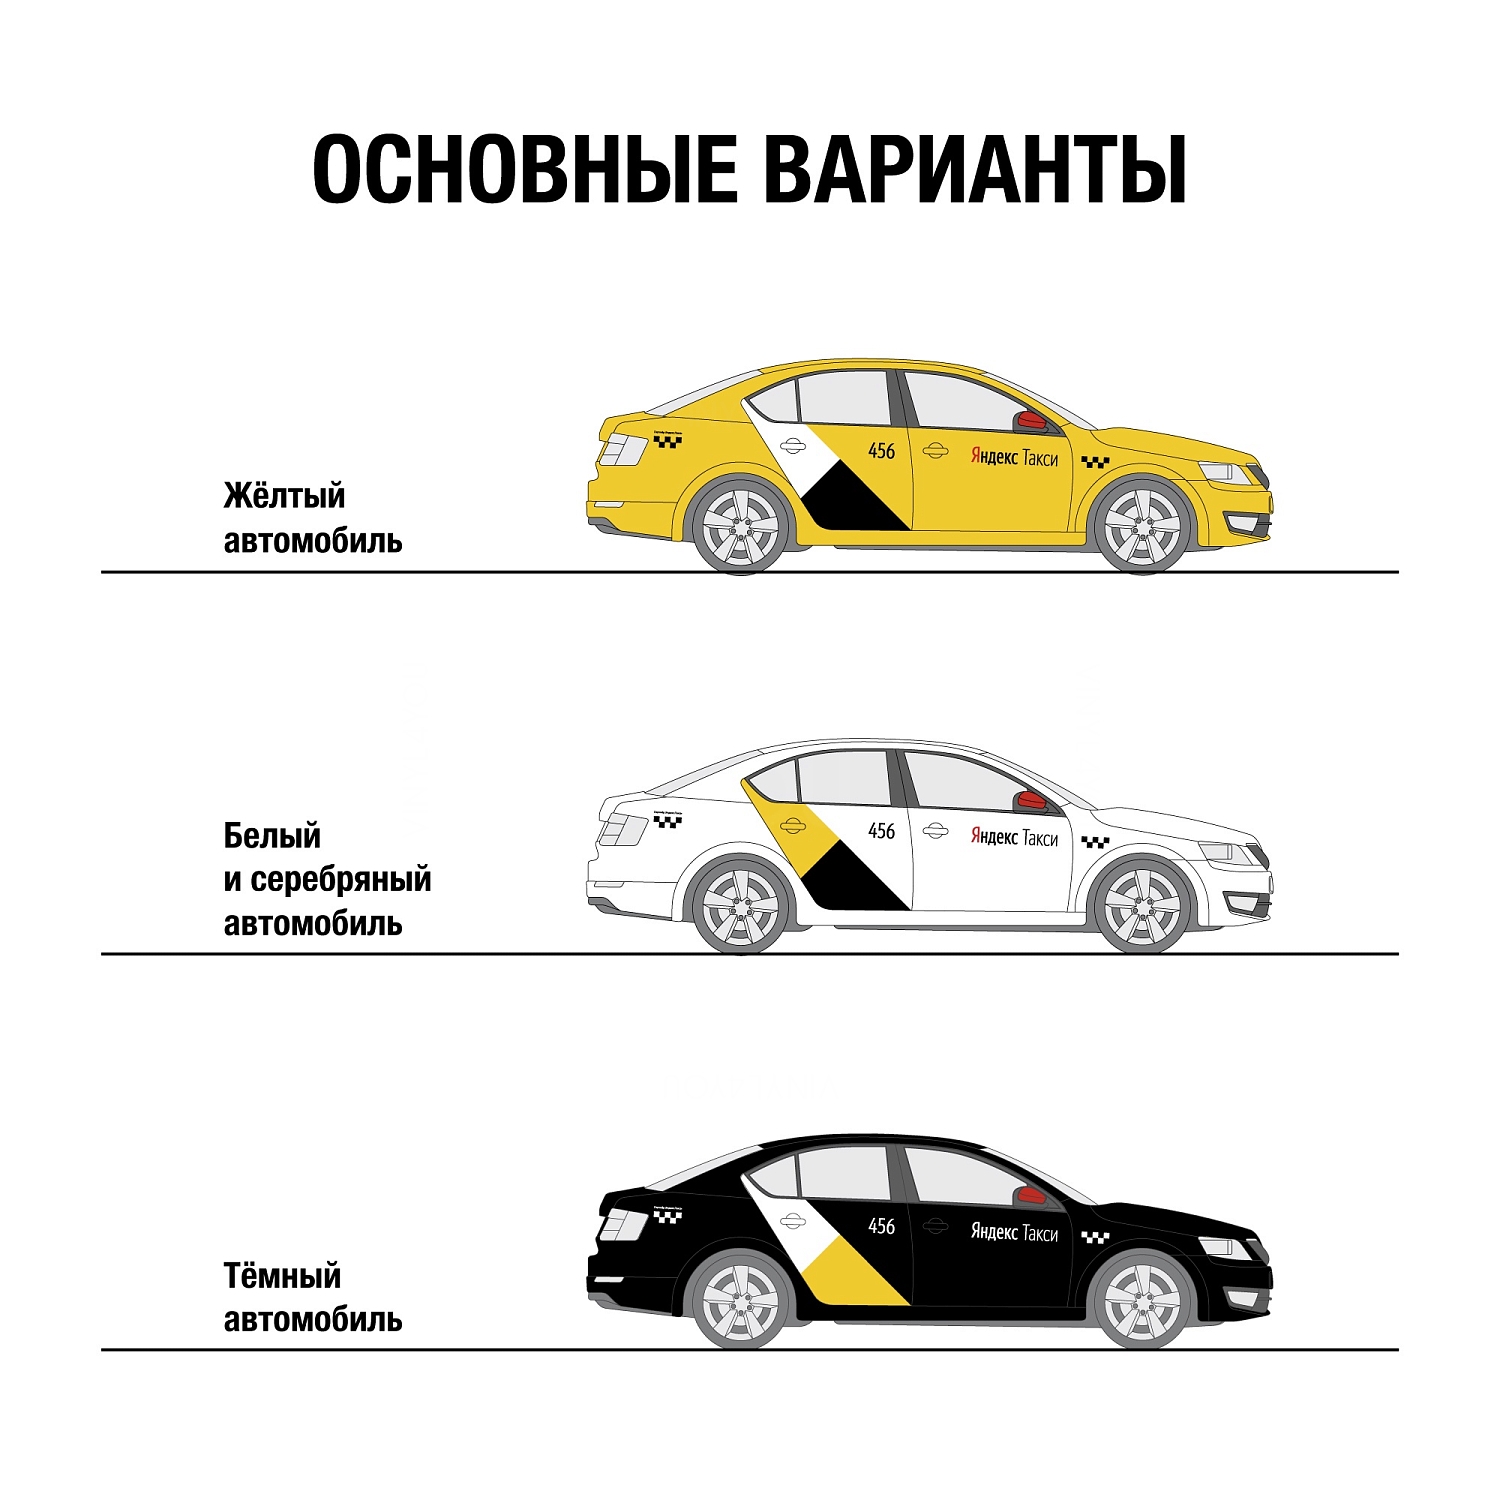 ВАЗ 2114 В наклейке Яндекс такси